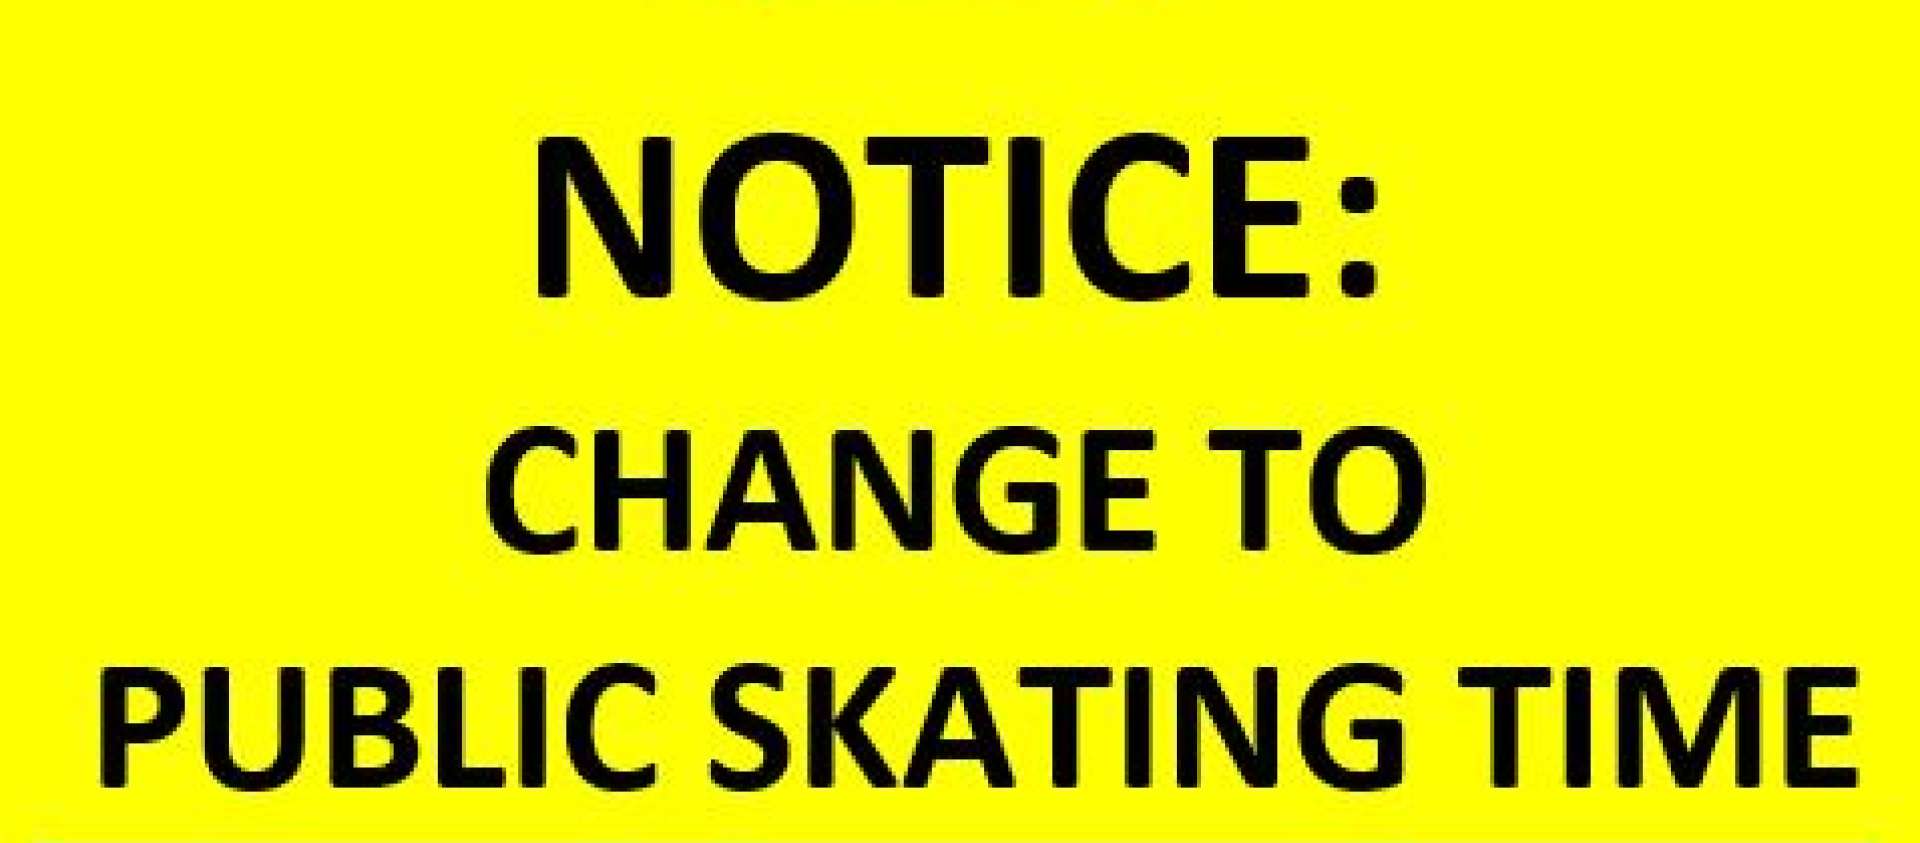 Skating Schedule Change